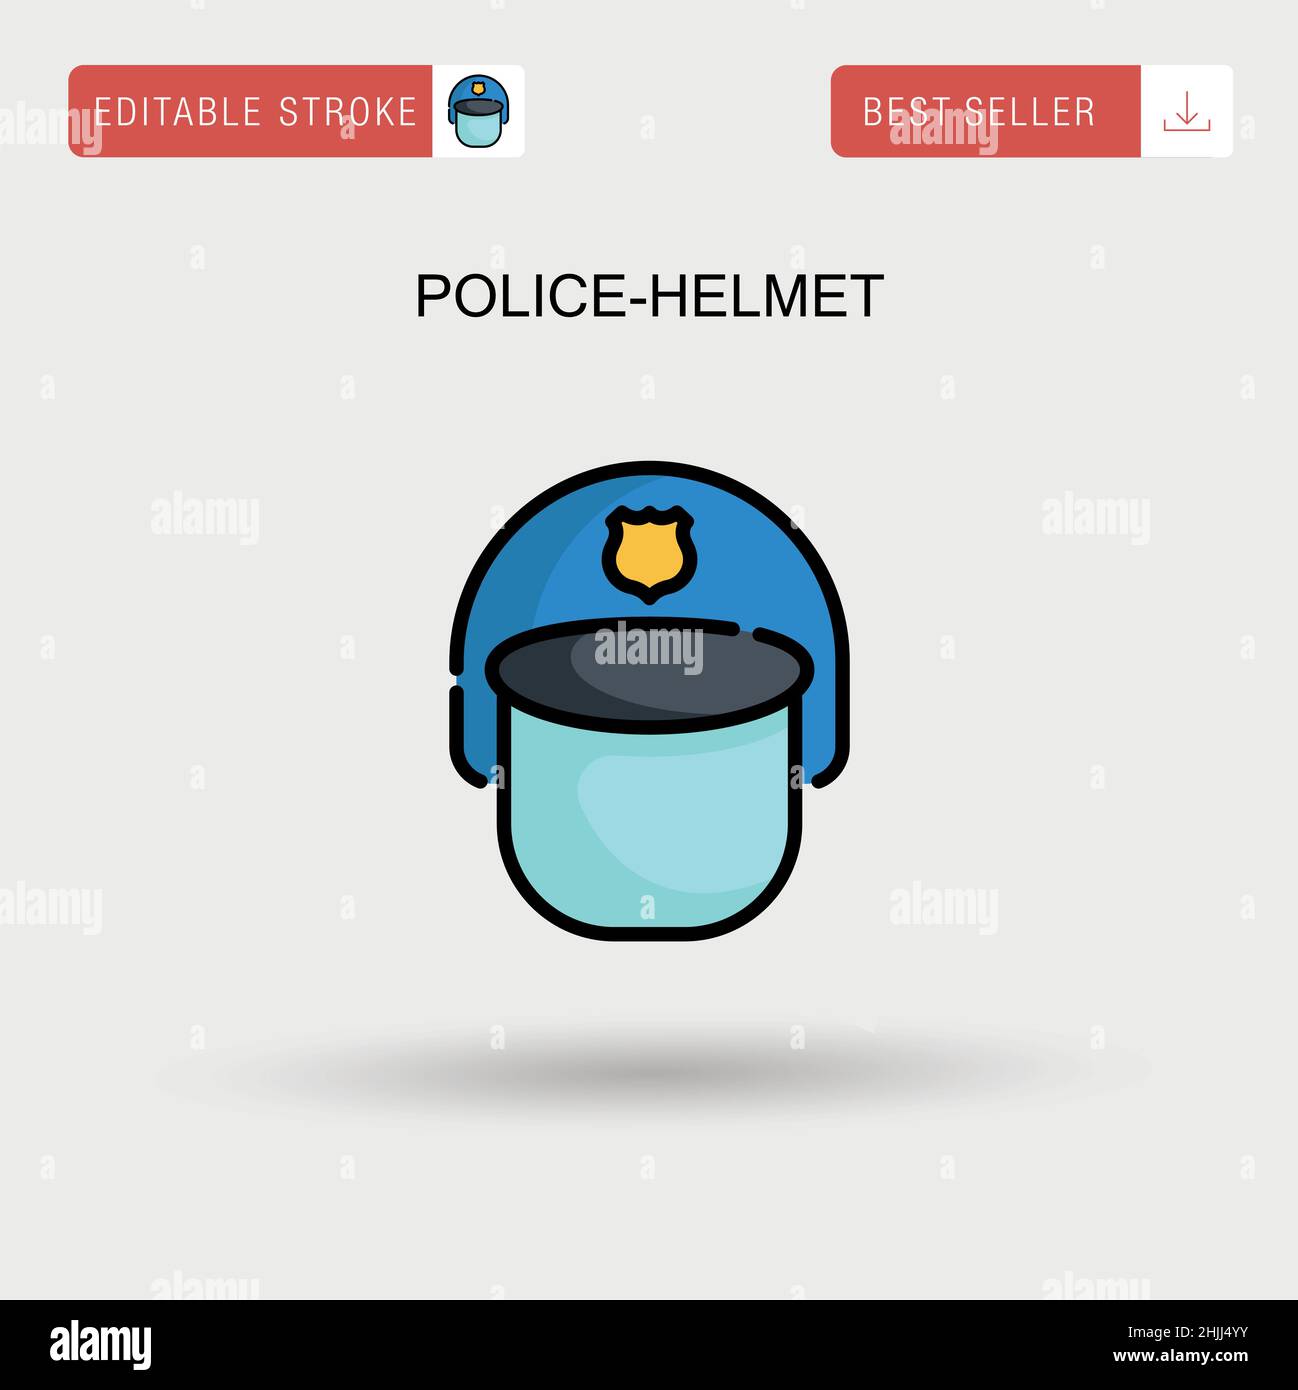 Police-helmet Simple vector icon. Stock Vector